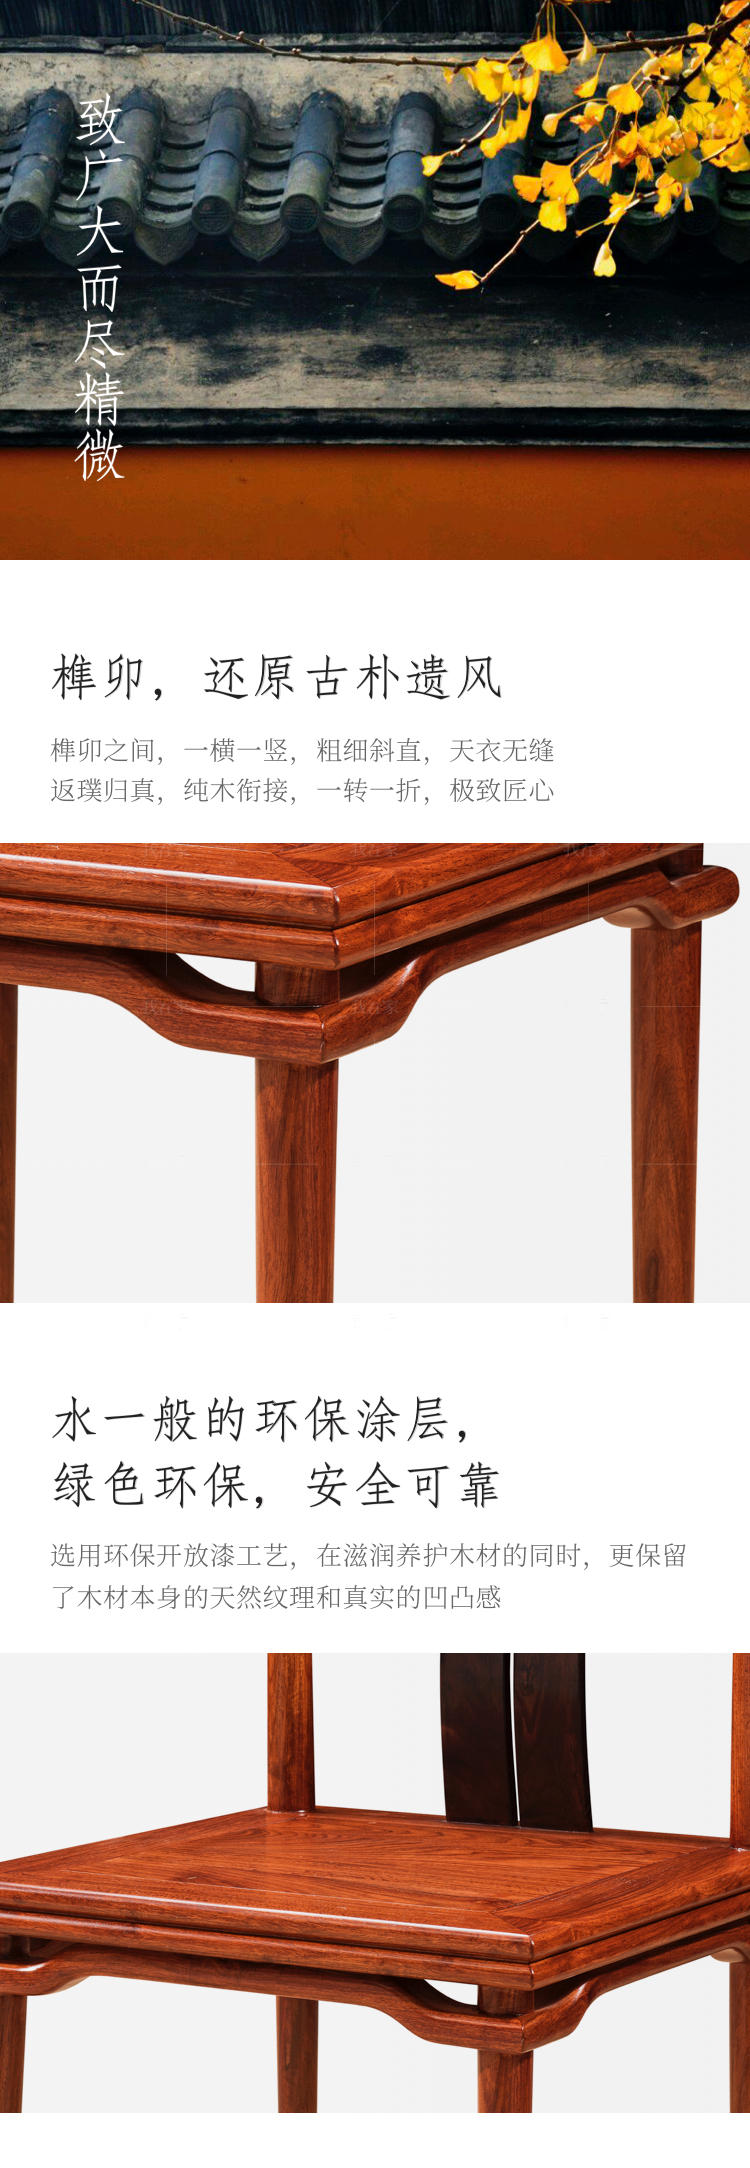 新古典中式风格梵语餐椅的家具详细介绍